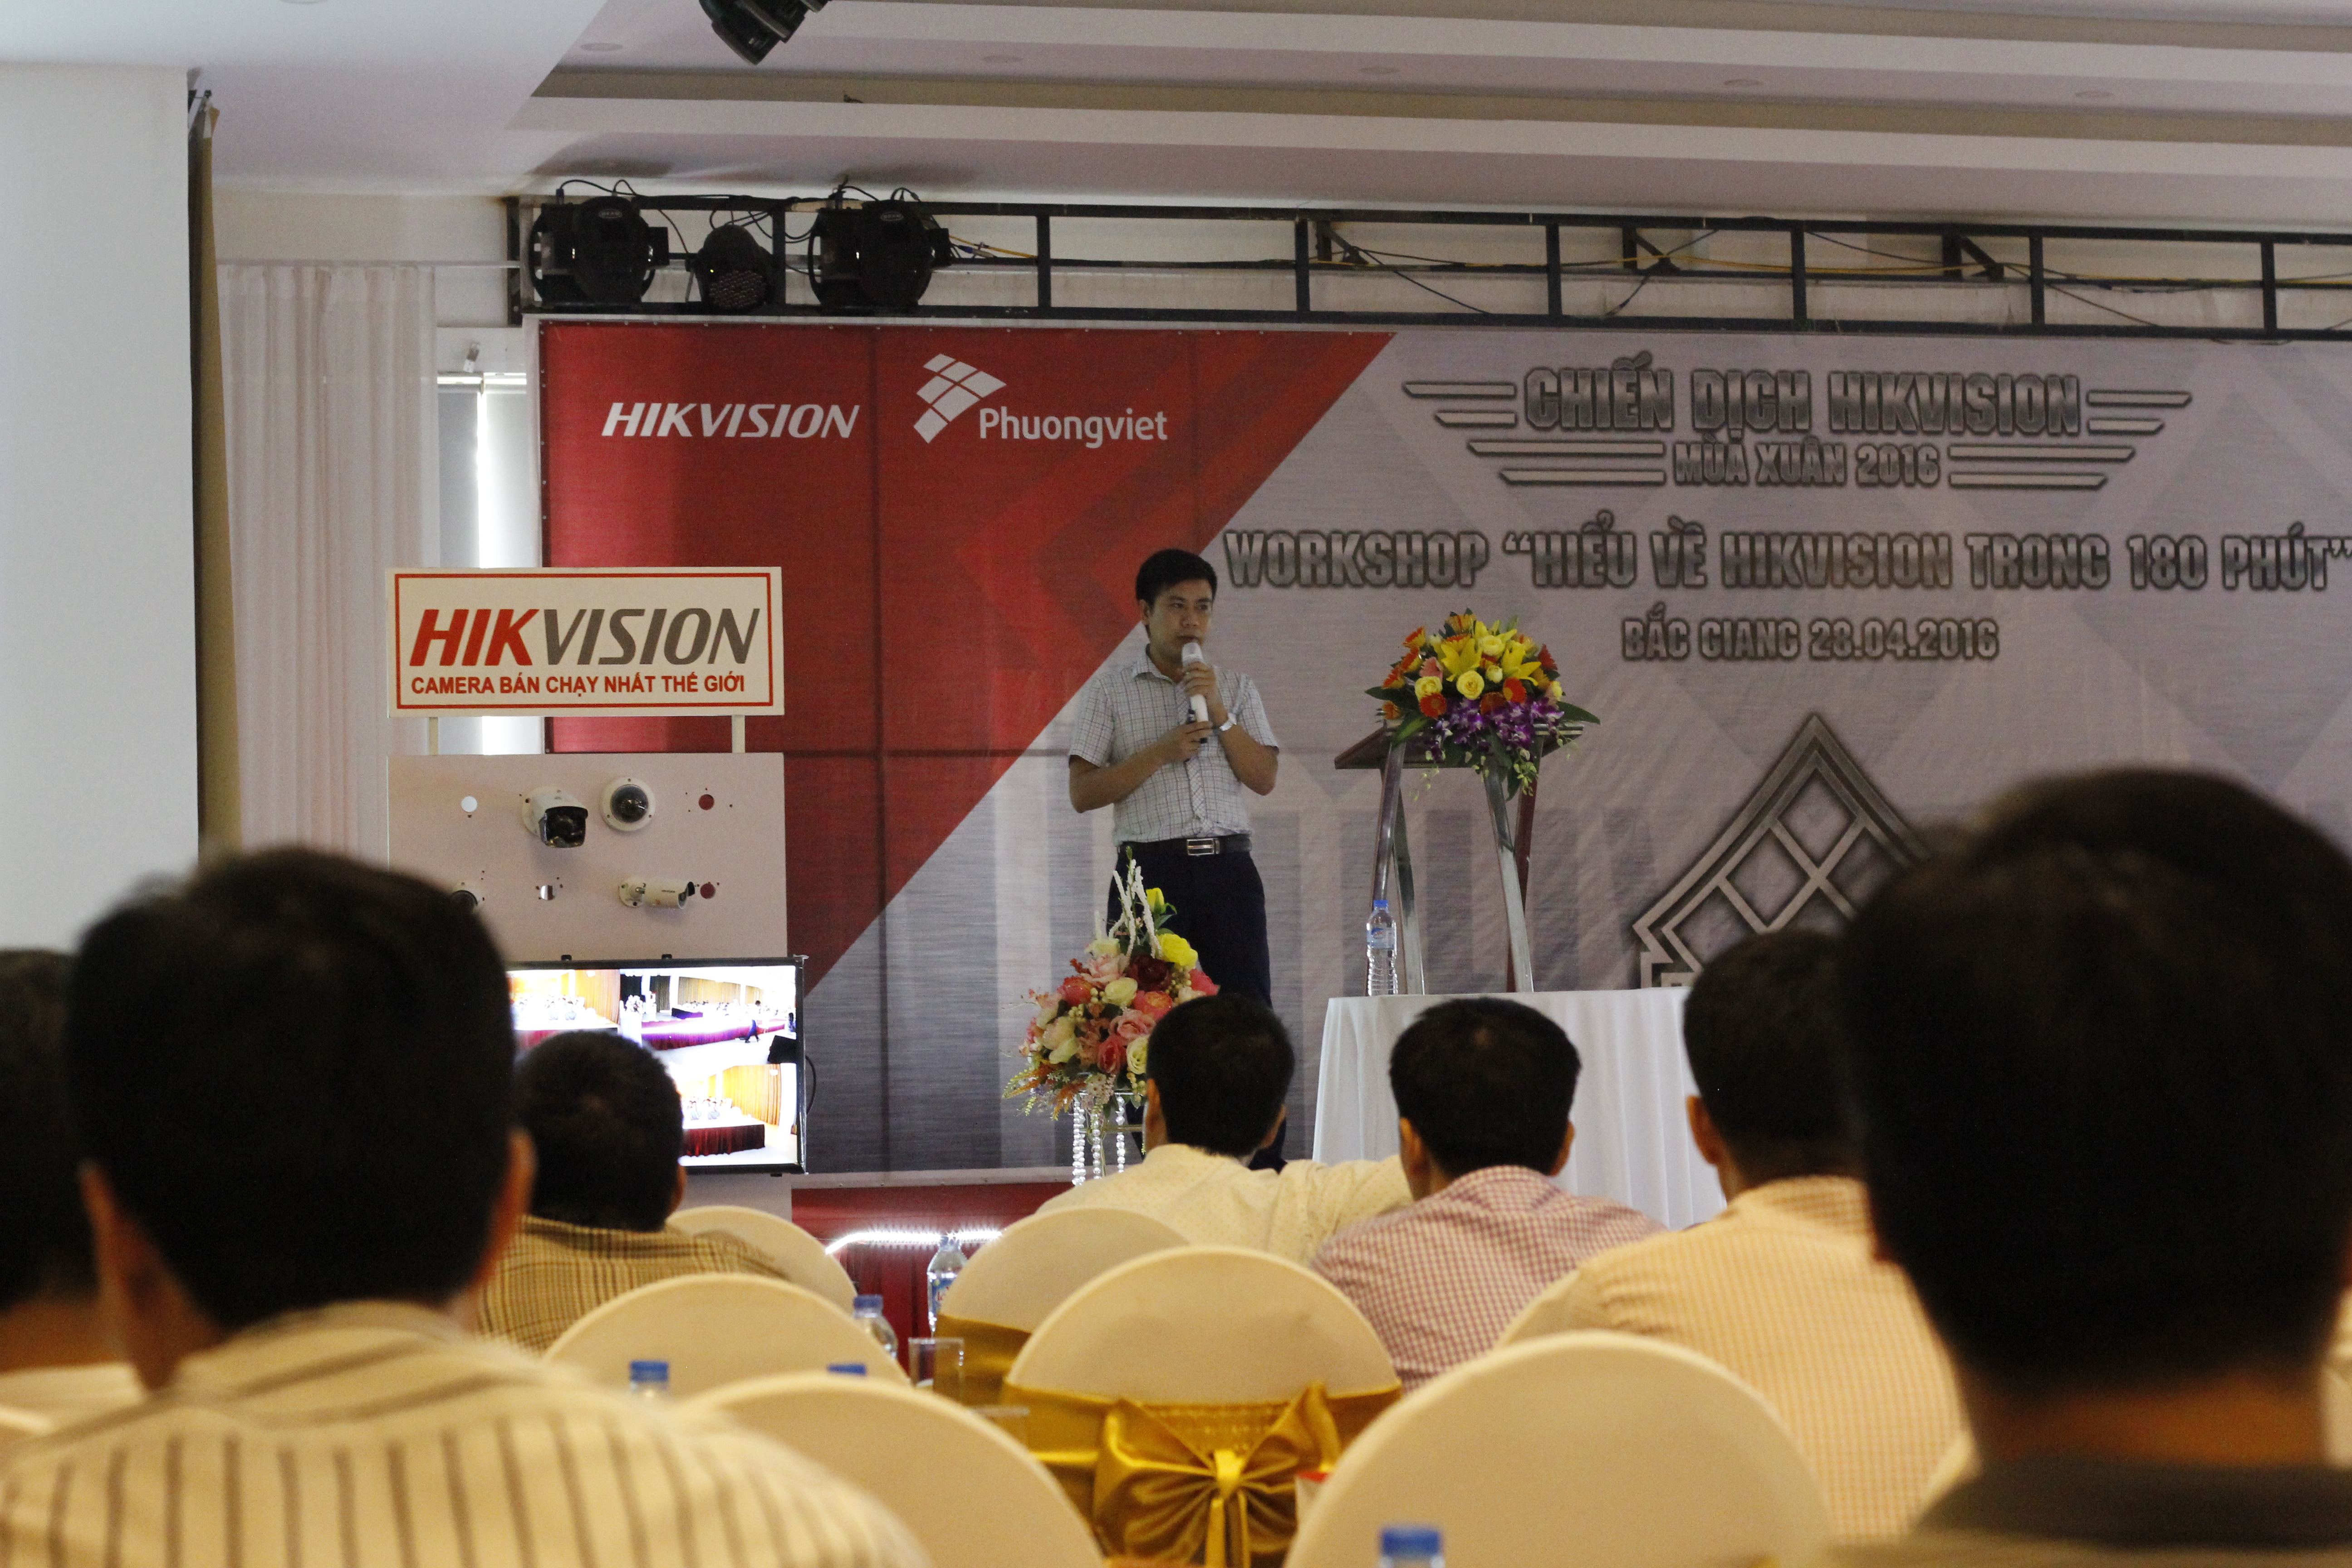 Ông Đỗ Văn Tuyền, giám đốc công ty Biển Bạc Bắc Giang chia sẻ về giải pháp truyền dẫn